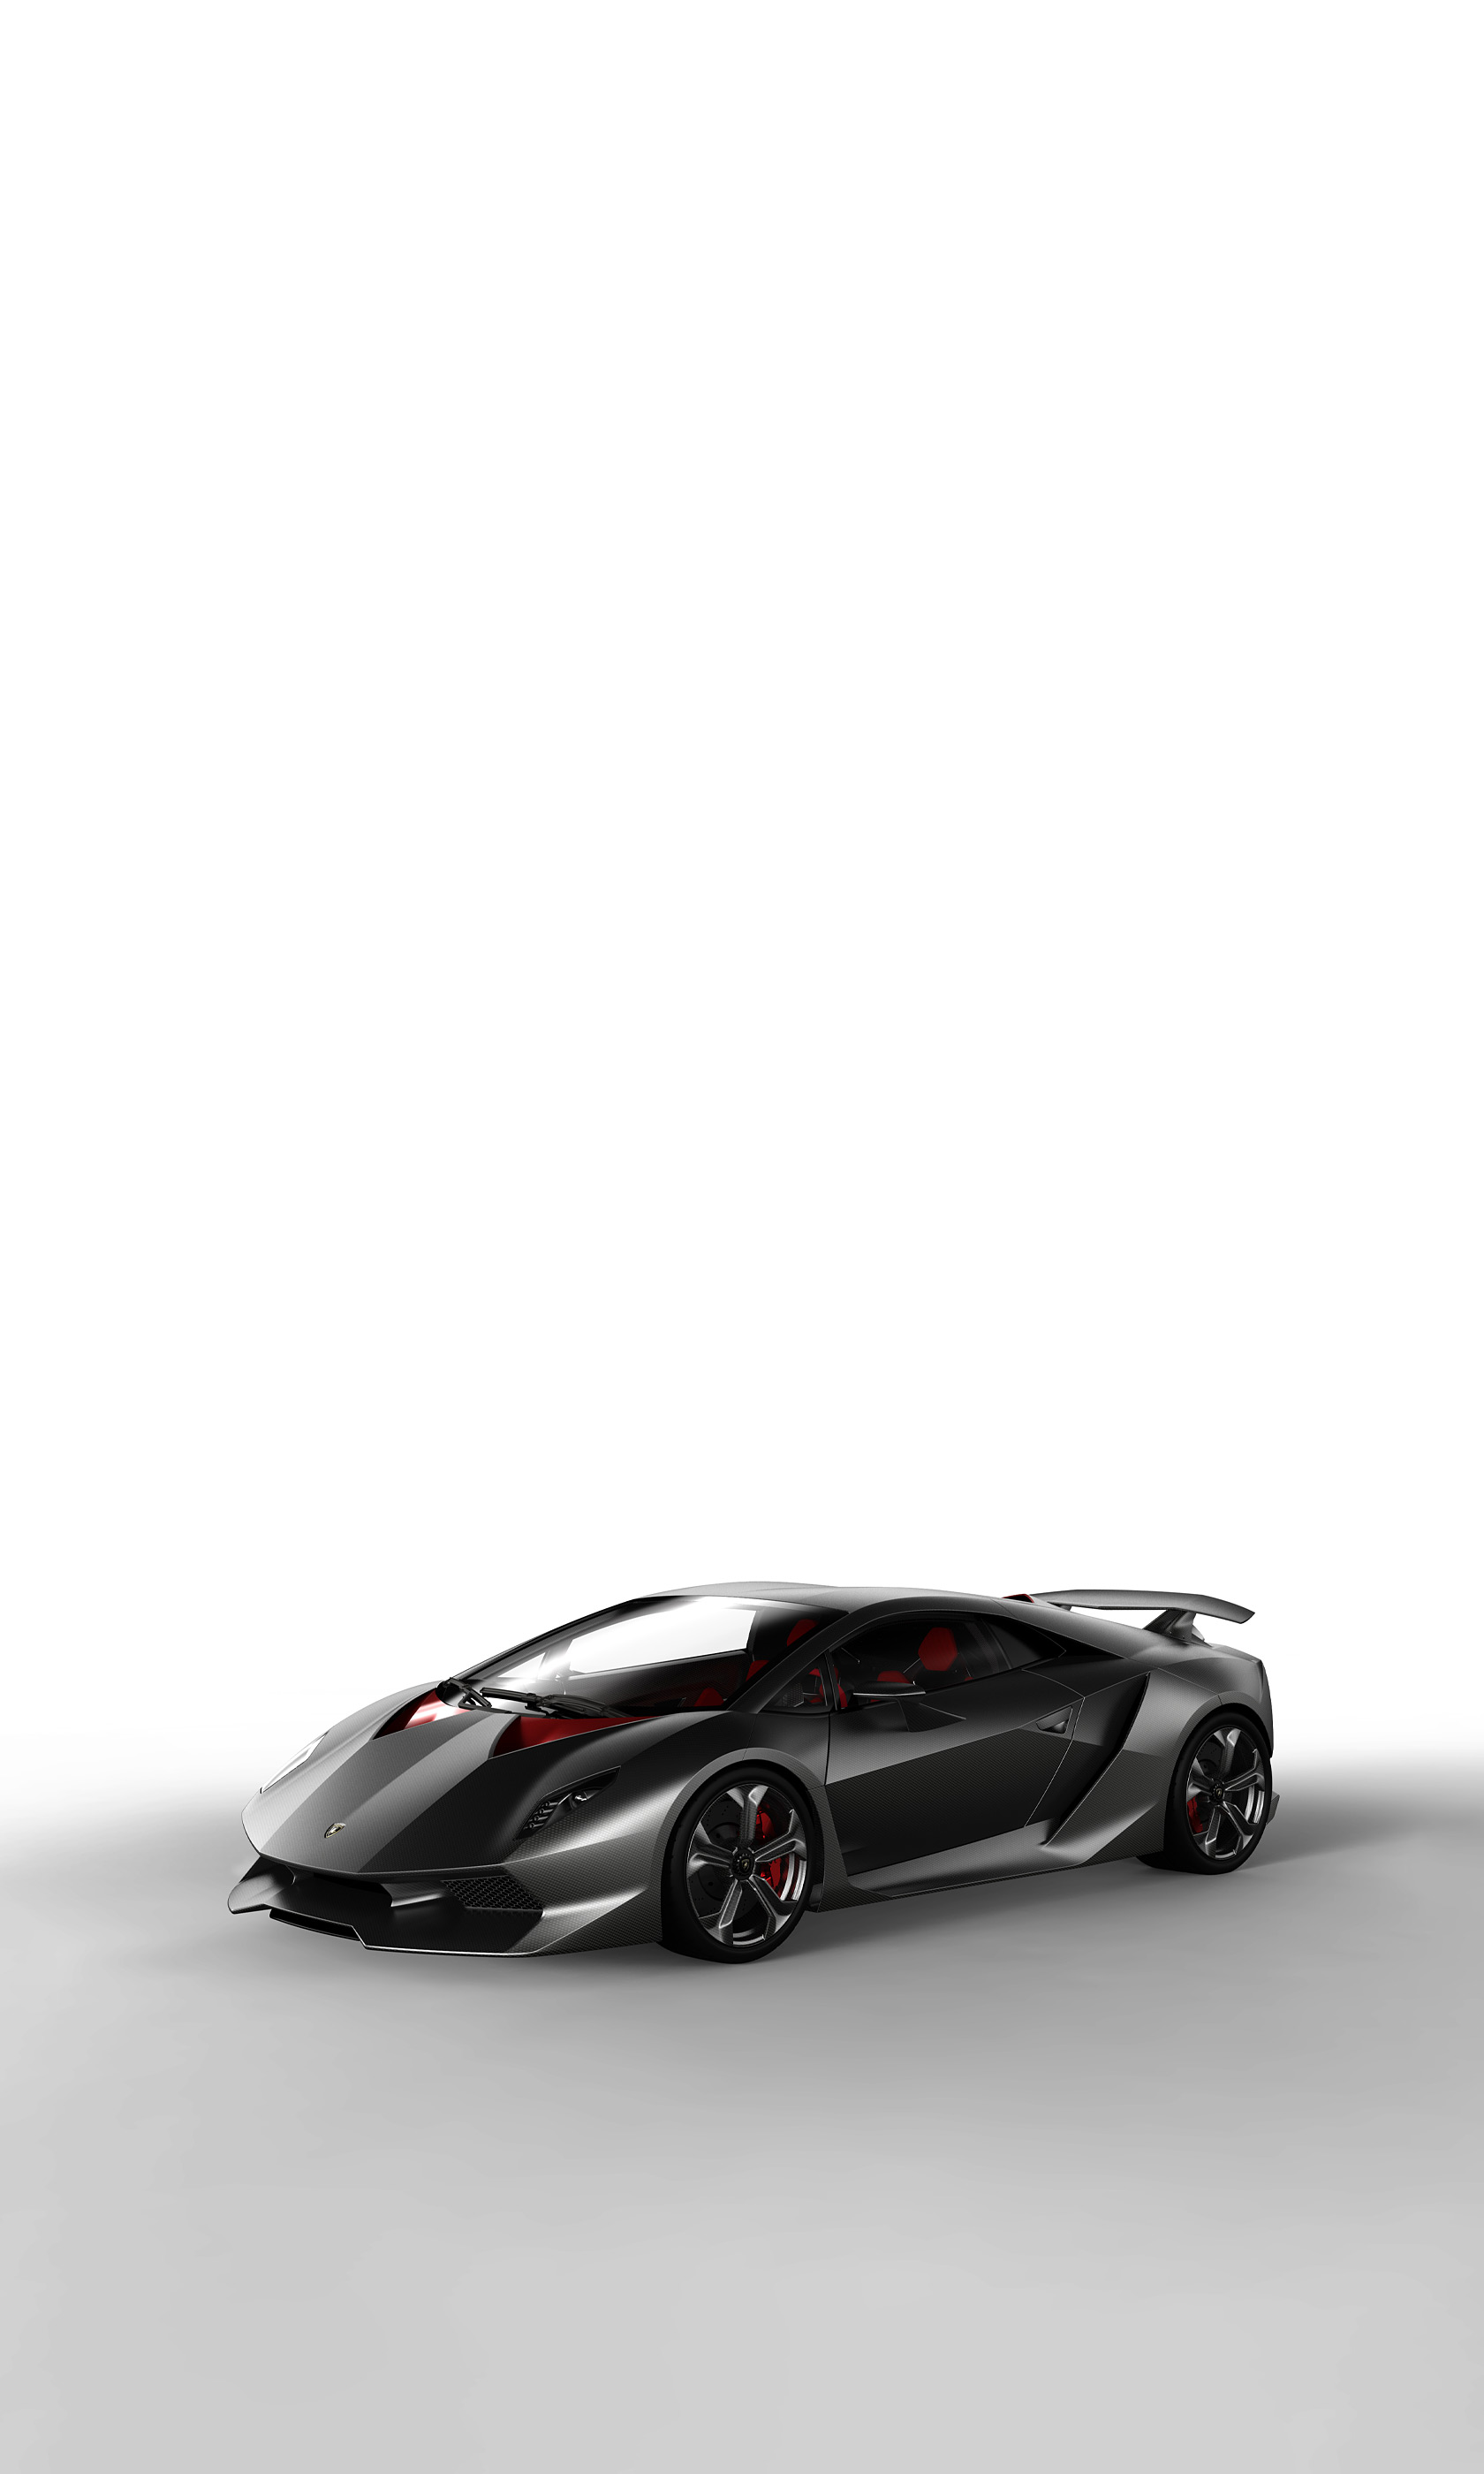  2010 Lamborghini Sesto Elemento Concept Wallpaper.